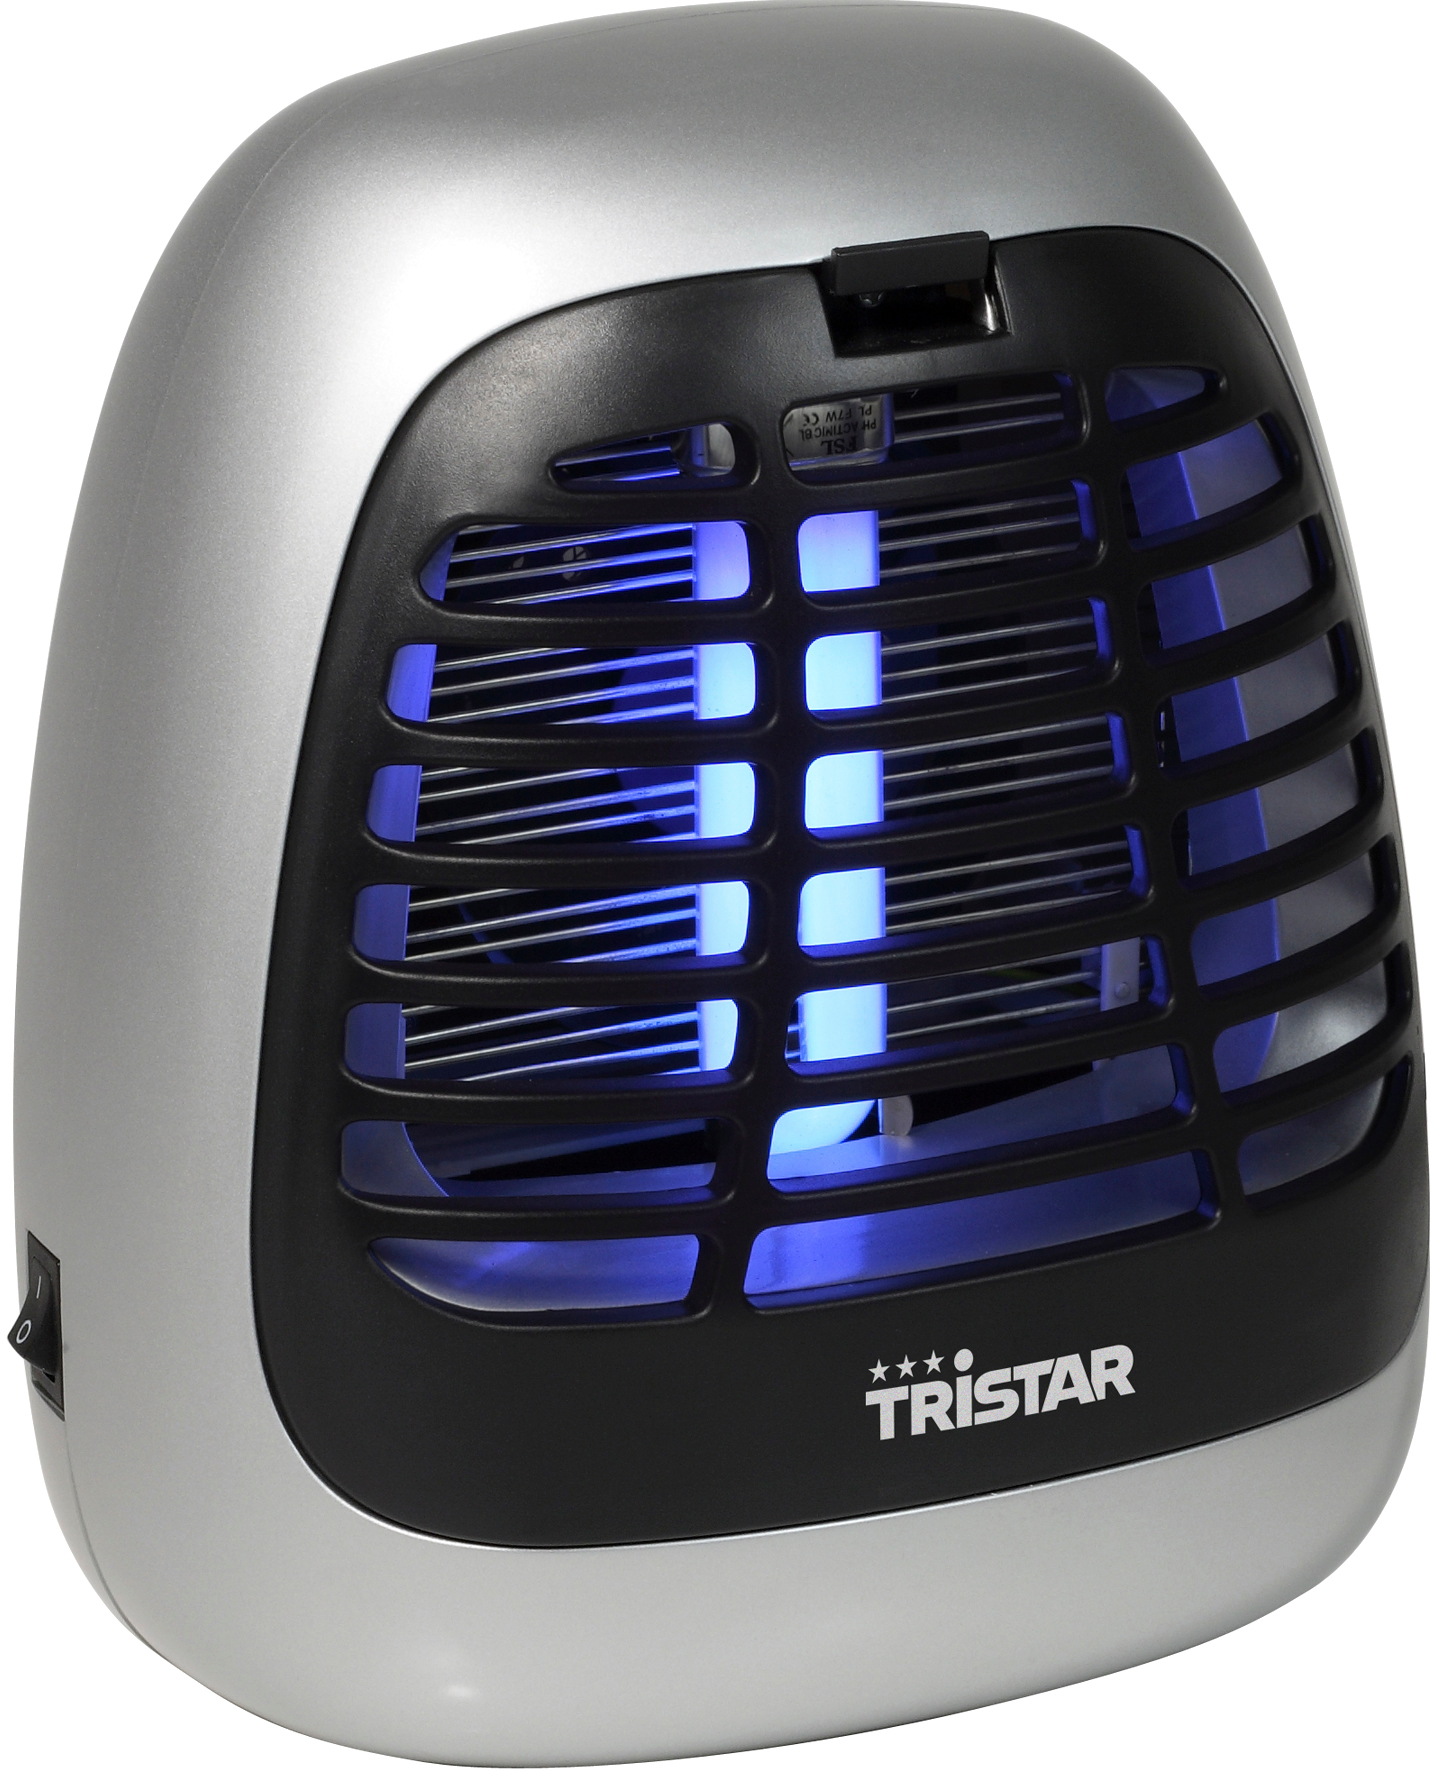 TRISTAR Insecticide IV-2620 électrique